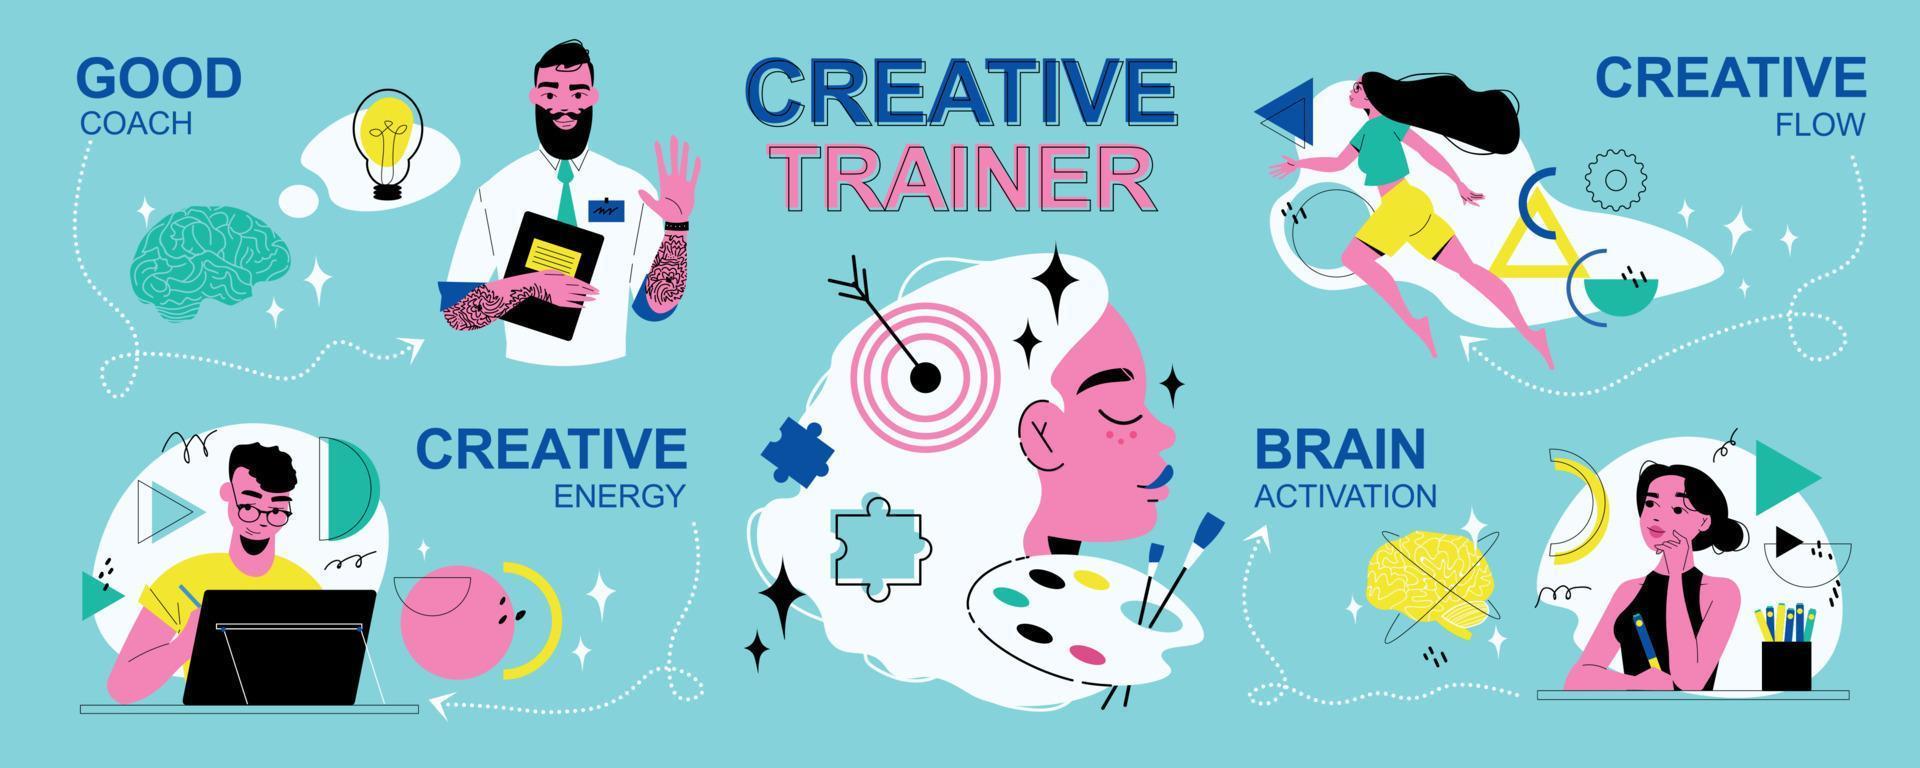 cartel de entrenador creativo vector